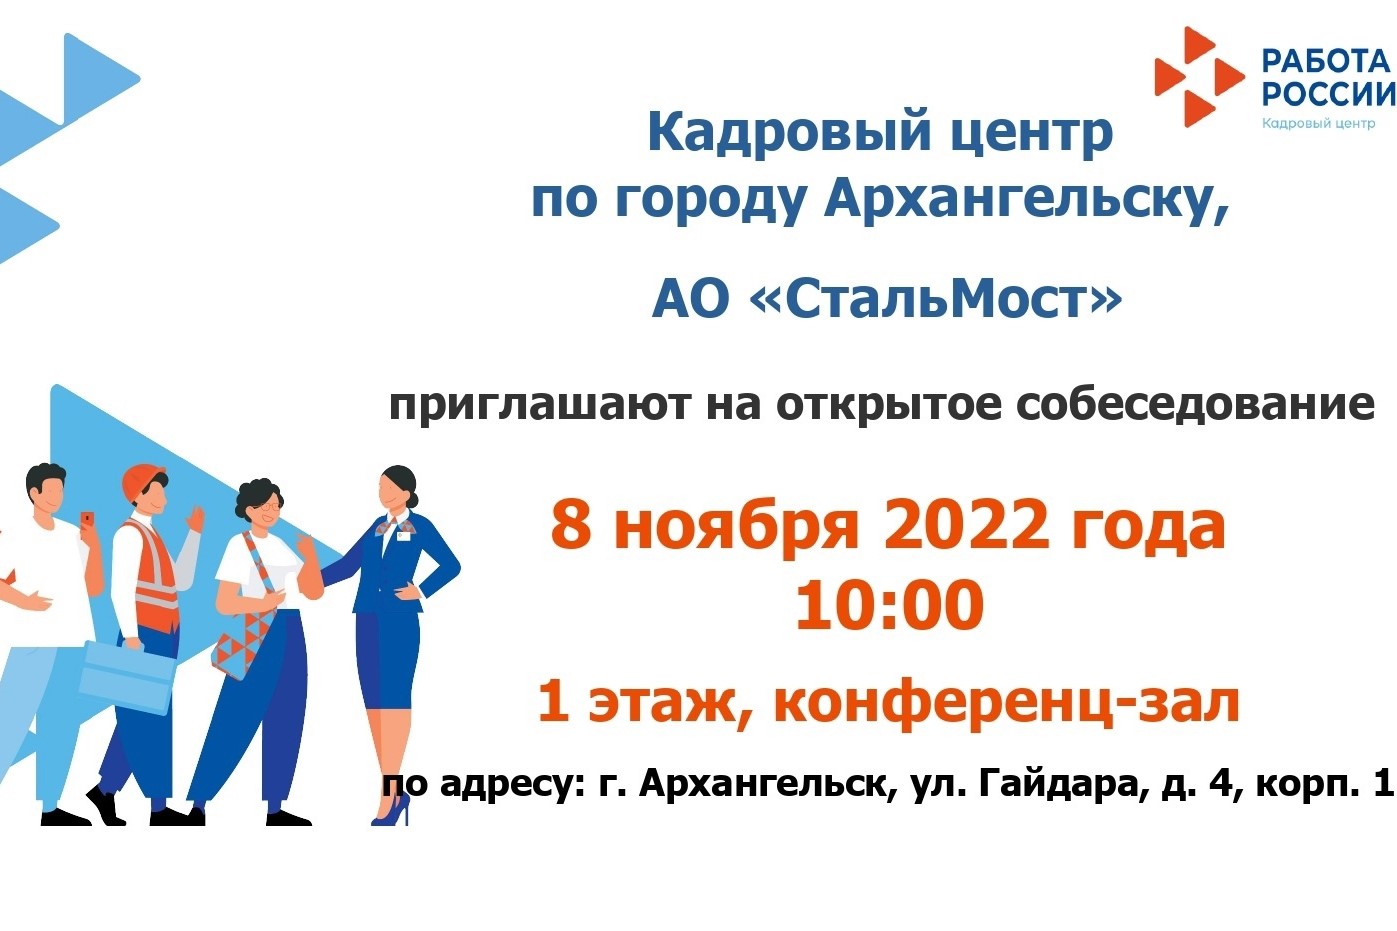 Кадровый центр по городу Архангельску приглашает на открытое собеседование с АО «СтальМост»